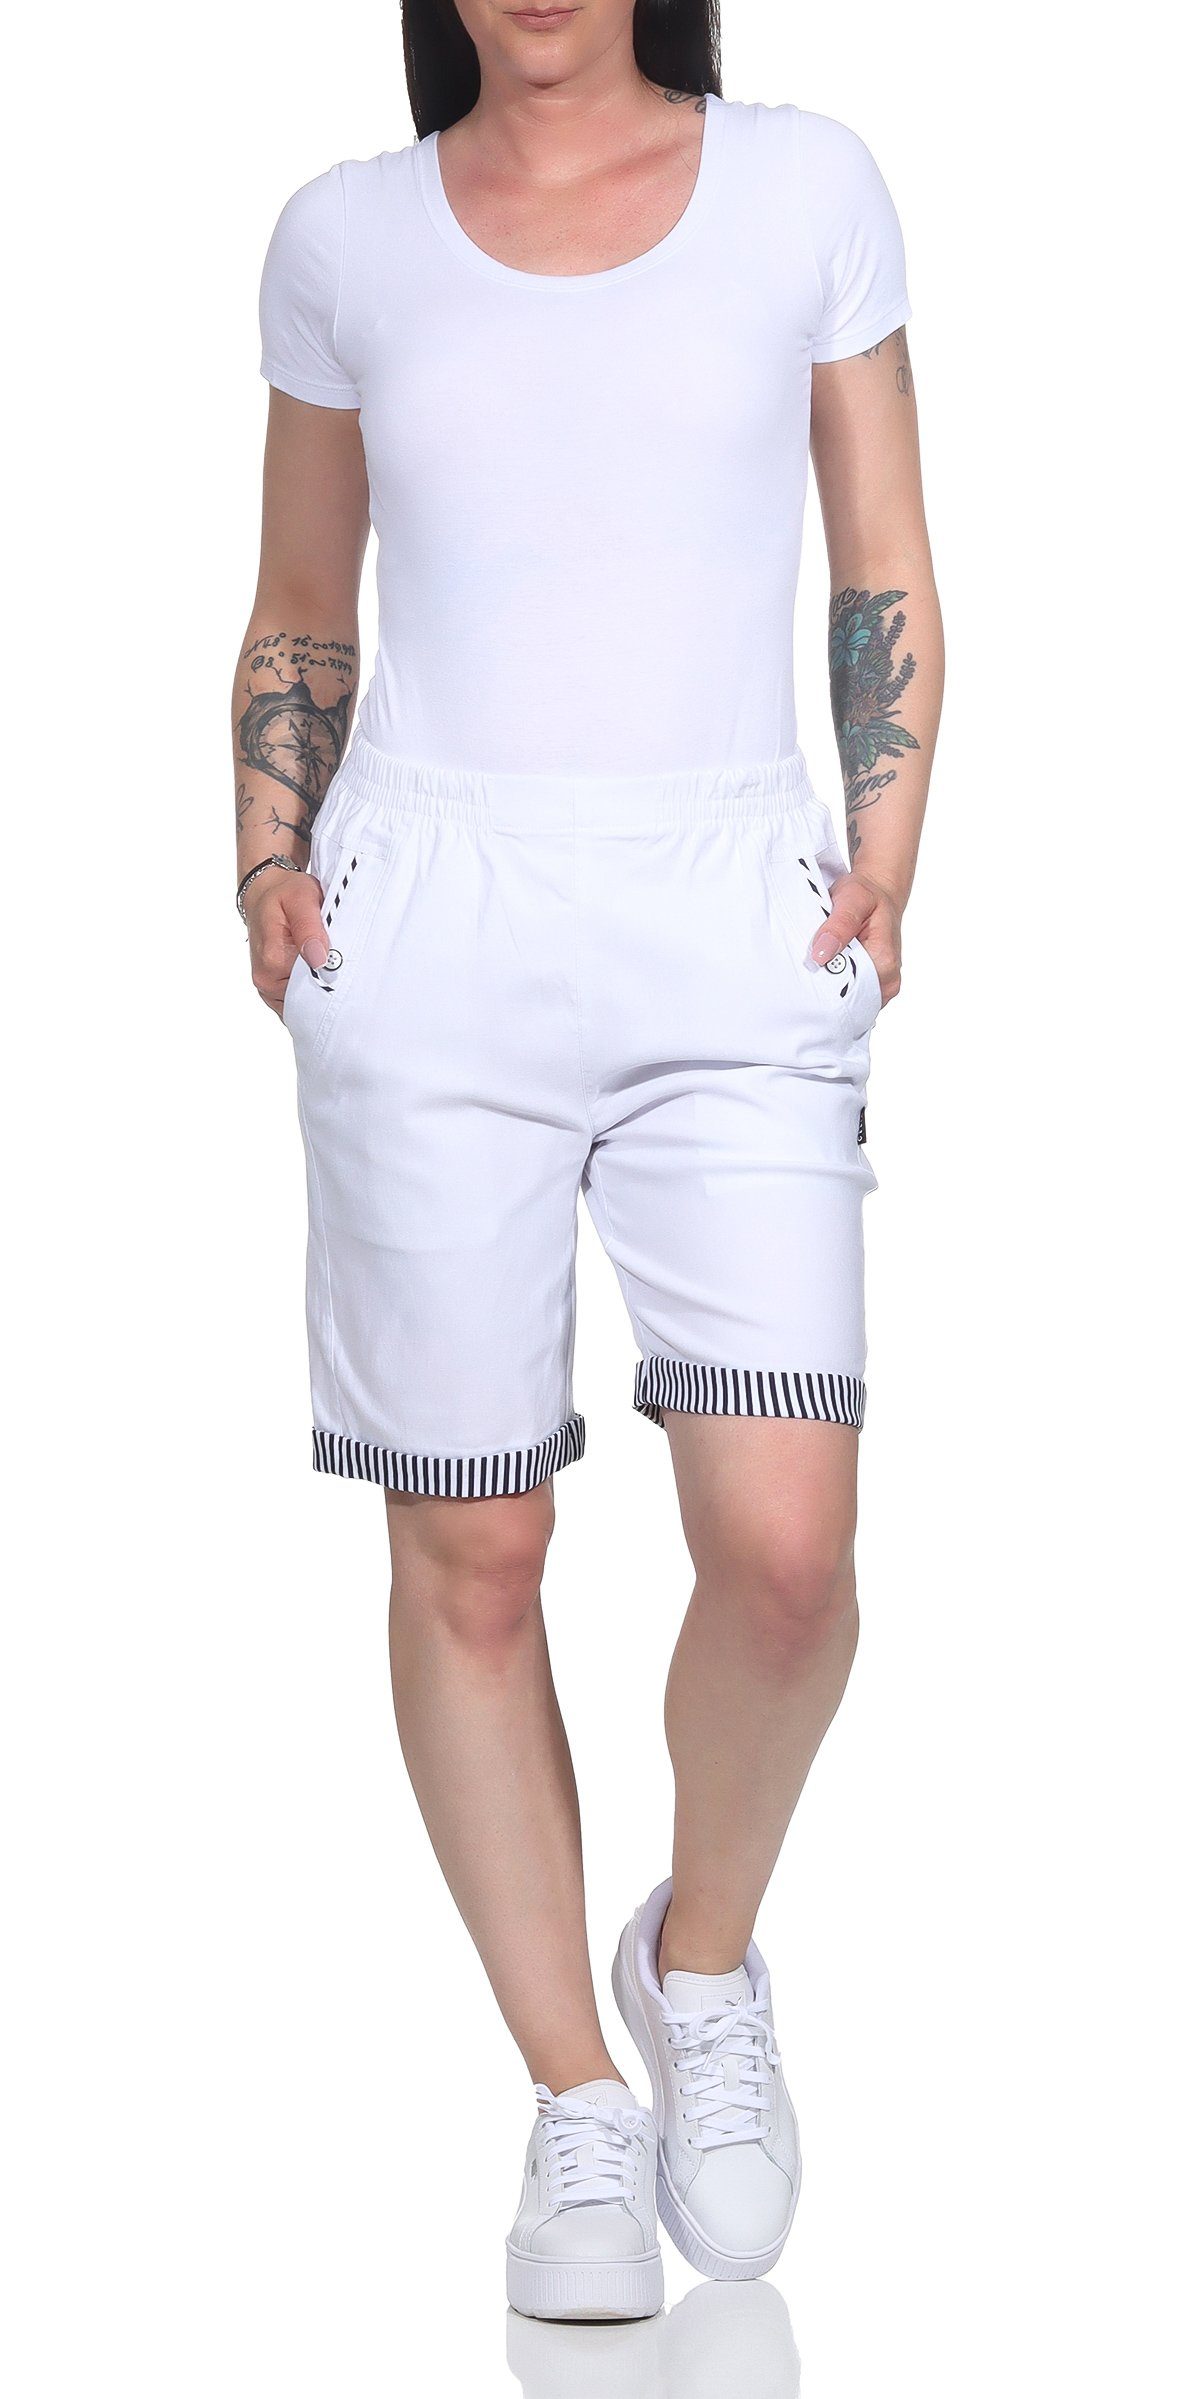 auch Maritime Bund, mit Damen in Bermuda Strandbermuda großen mit Details Sommer erhältlich, Aurela Größen Weiß Shorts maritimen Shorts elastischem Damenmode